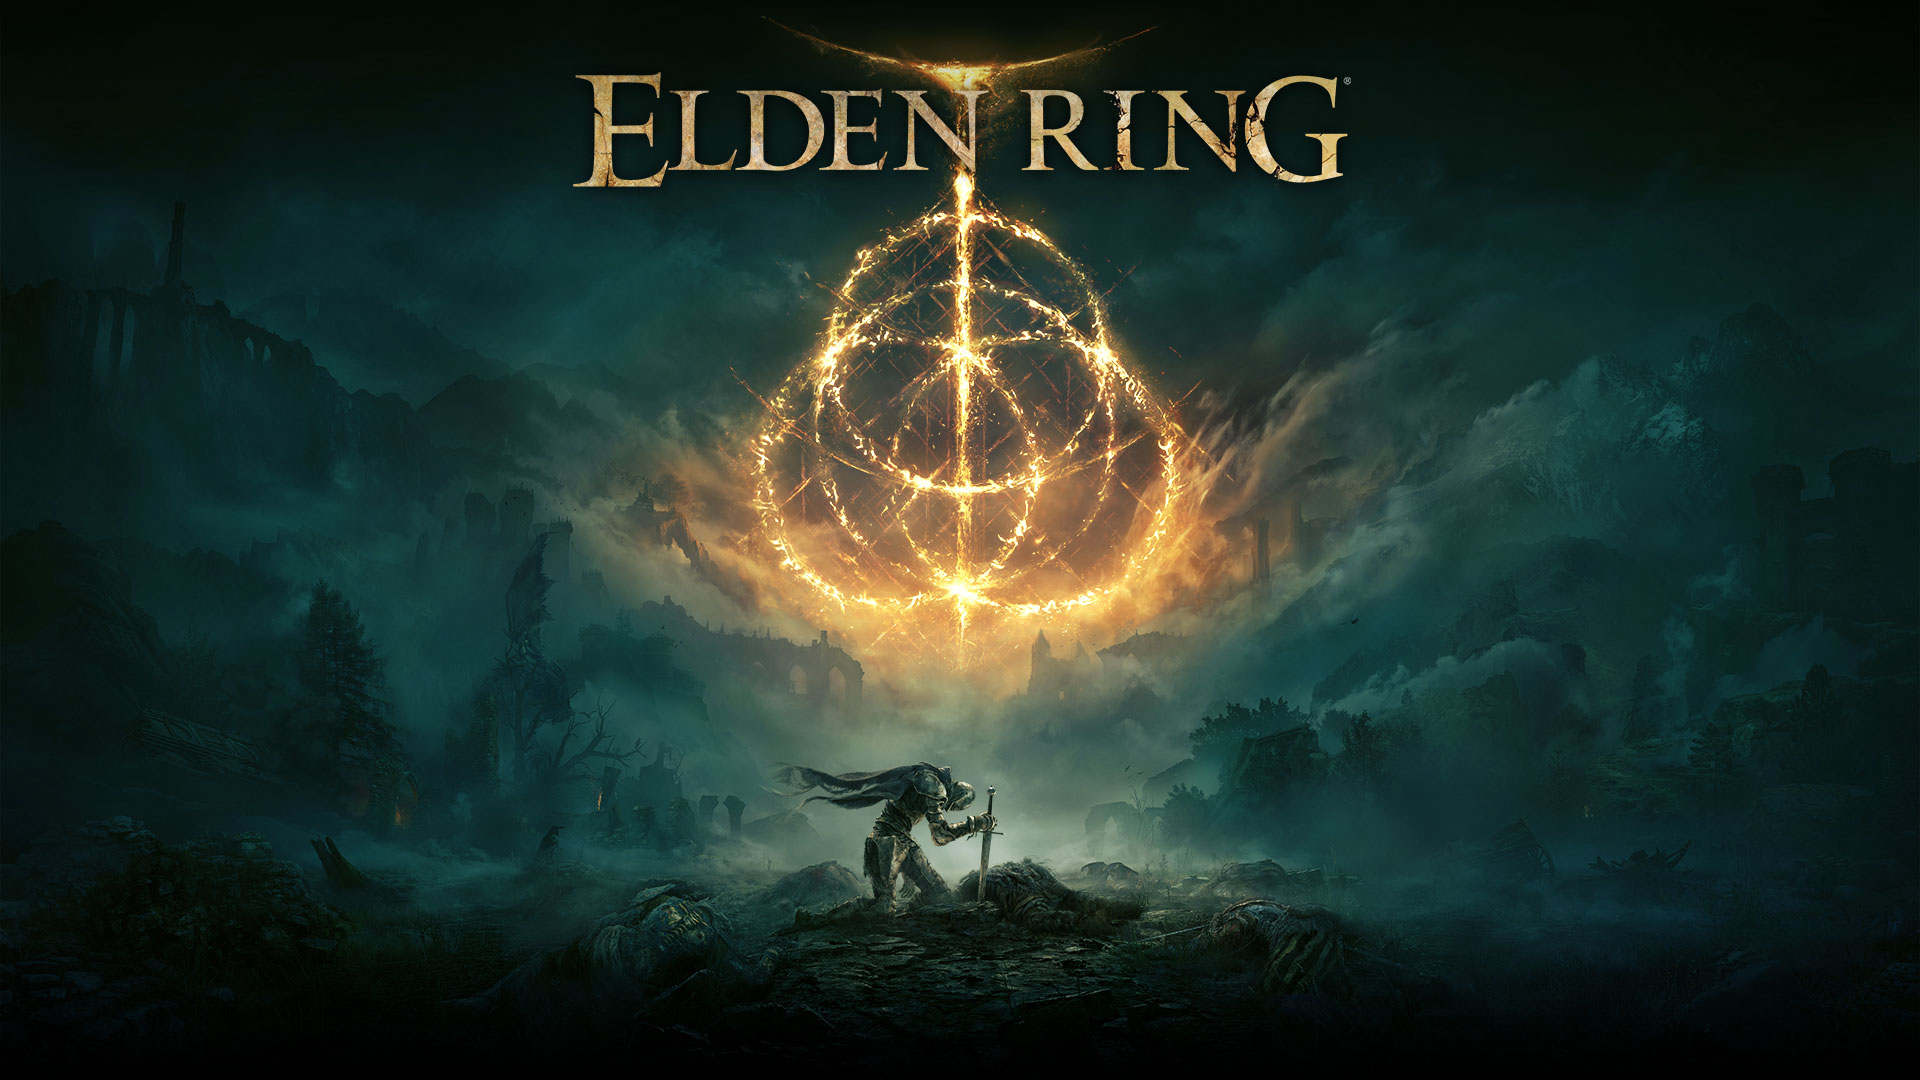 Elden RingElden Ring のシンボルを描く炎のリング。霧のかかった荒涼とした場所で、剣を地面に立てた騎士のキャラクター。